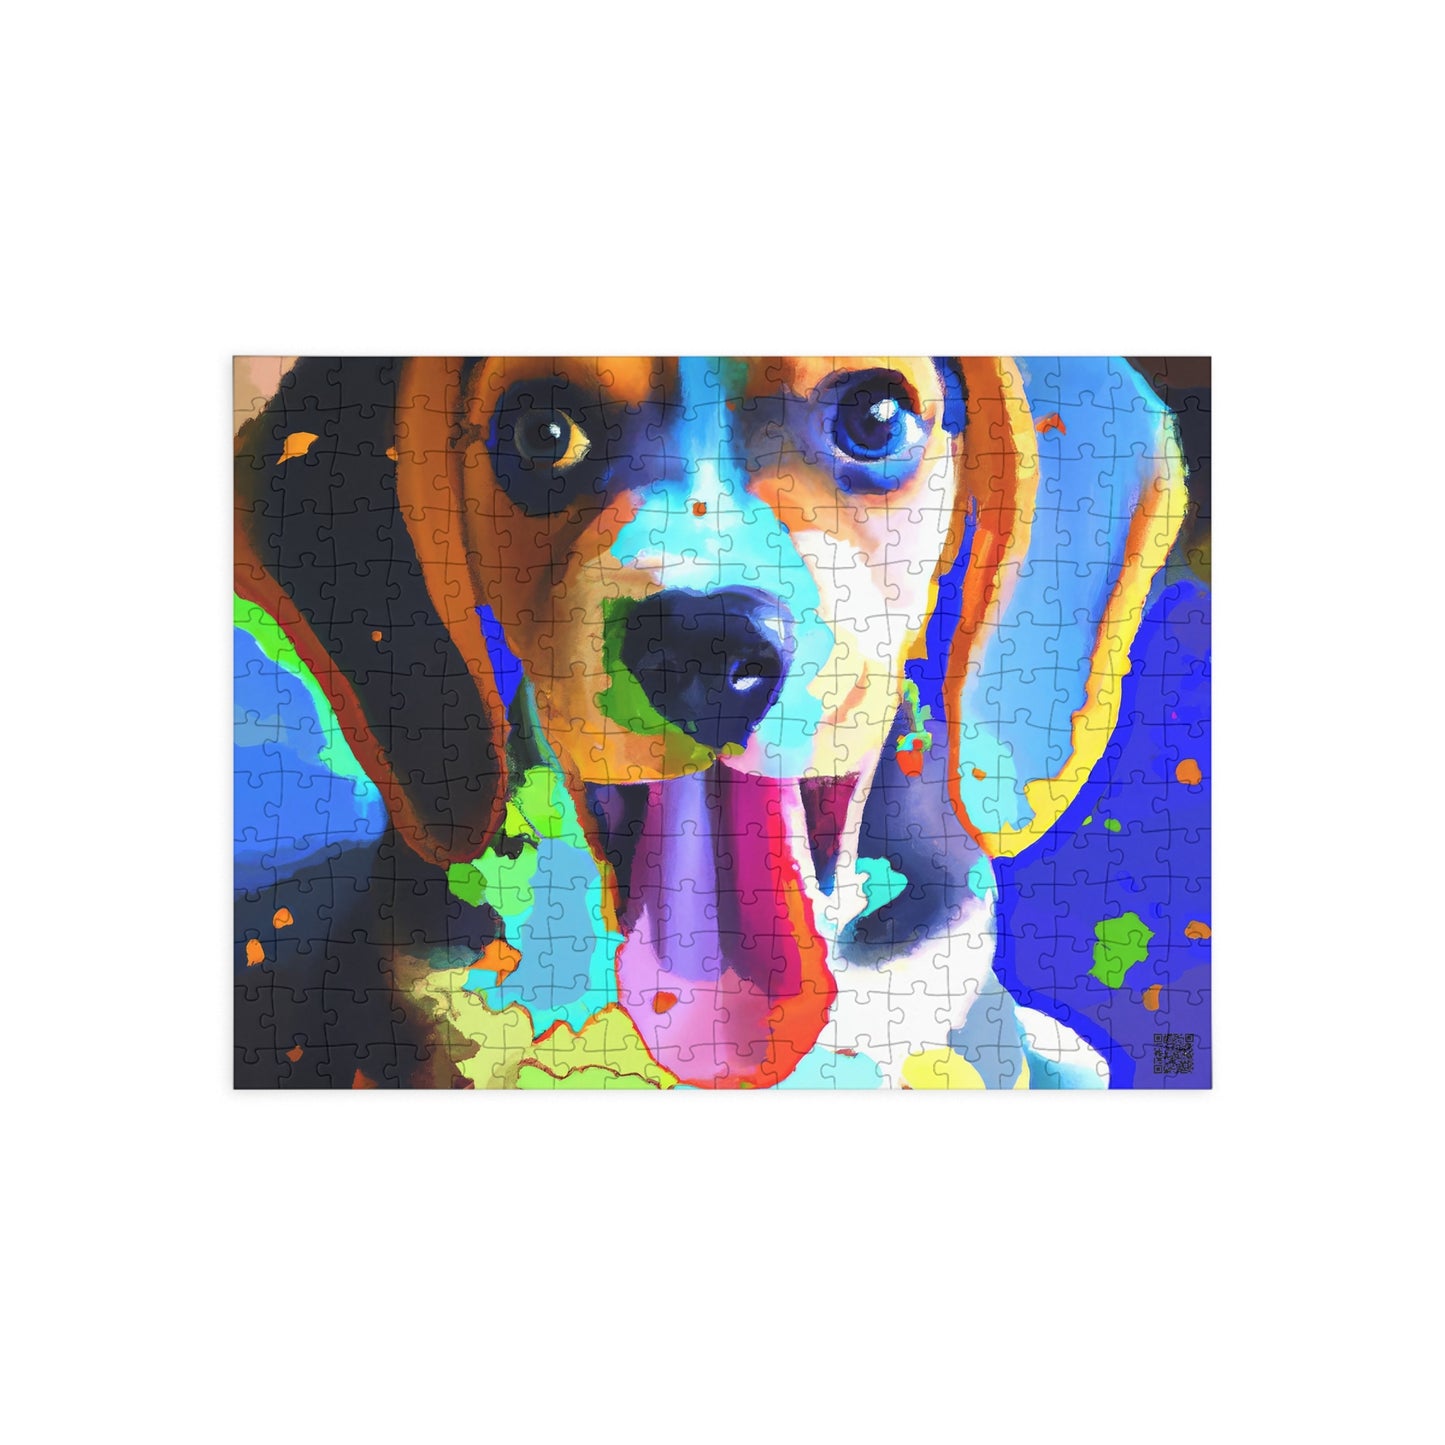 Prince Magnirello Margonty - Beagle Puppy - Puzzle